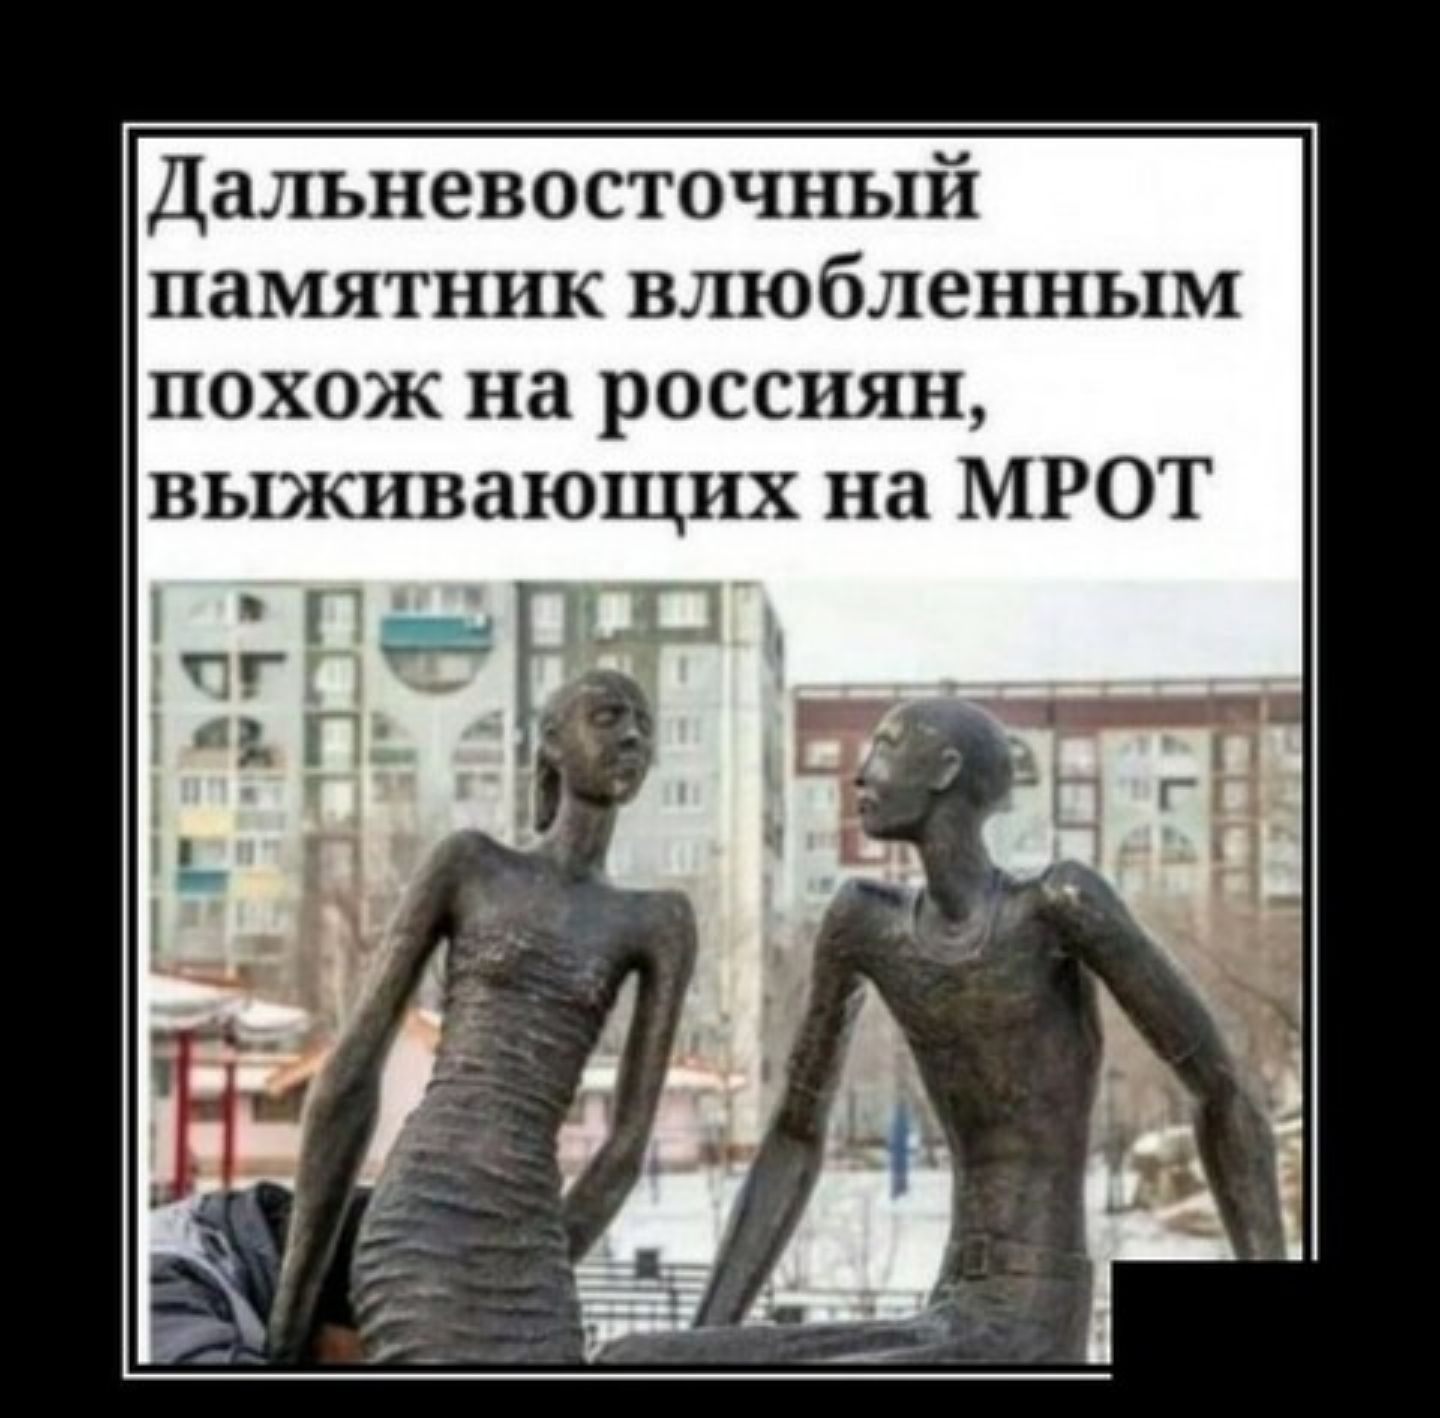 Дальневосточный памятник влюбленным похож на россиян выживающих на МРОТ